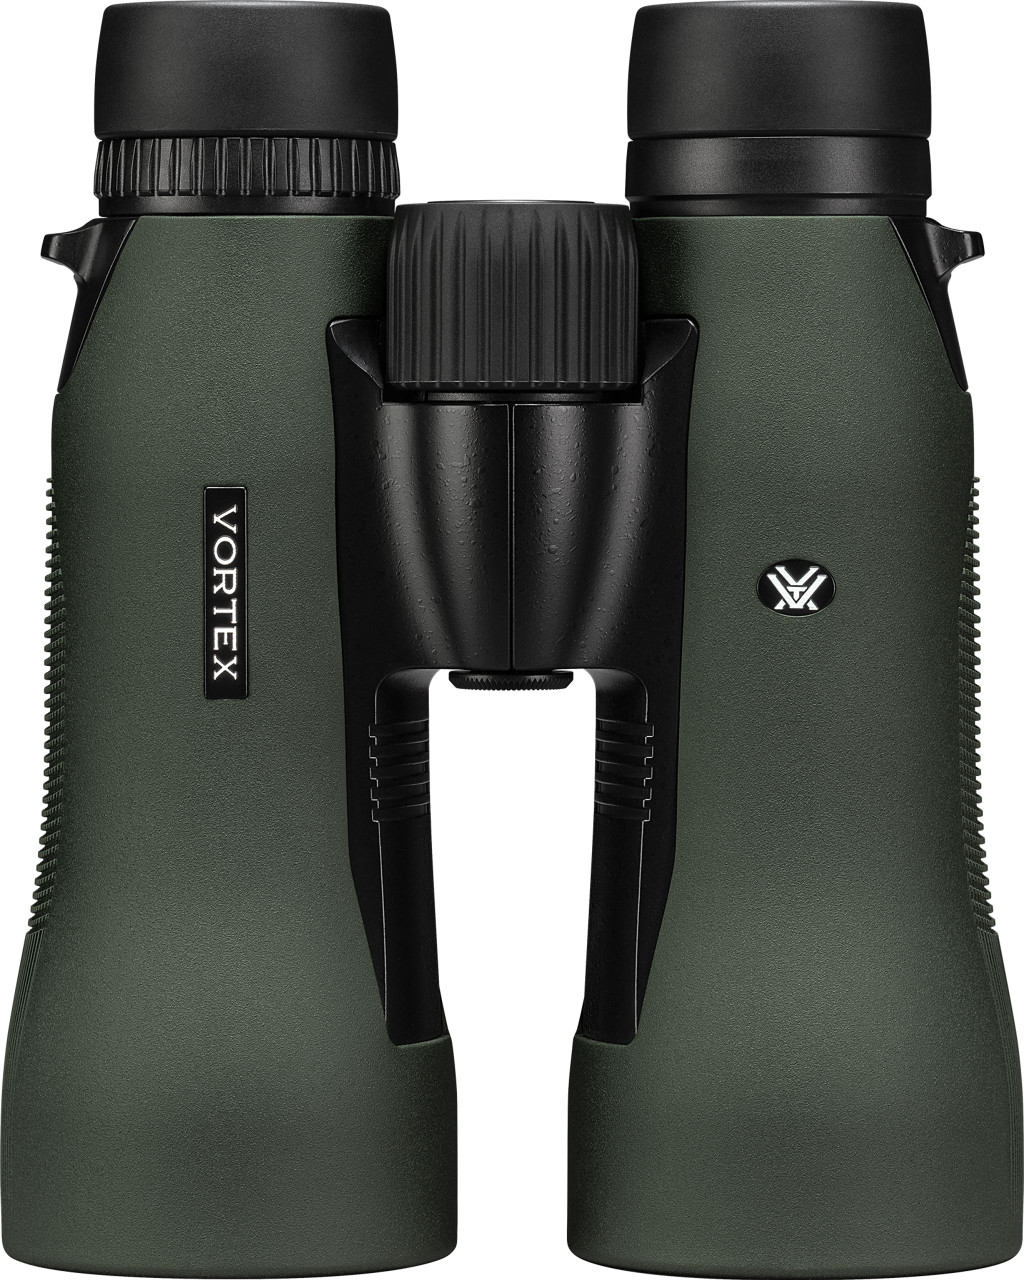 Vortex Diamondback HD 15x56 Binoculars